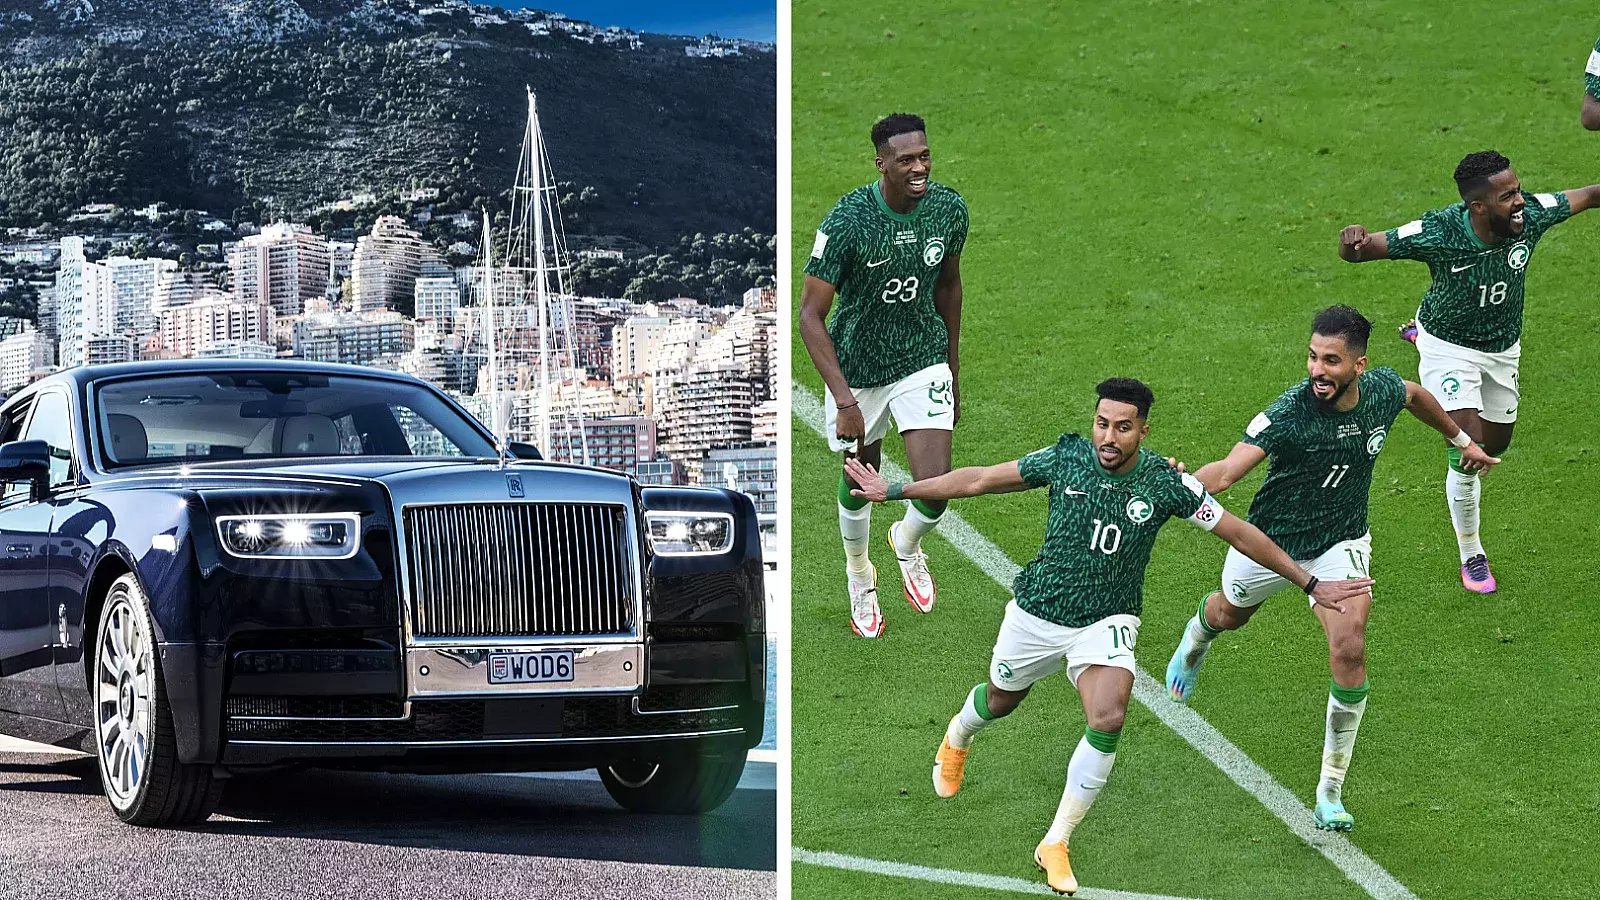 De lujo: Regalan un Rolls Royce a cada jugador de Arabia Saudí por su victoria sobre Argentina